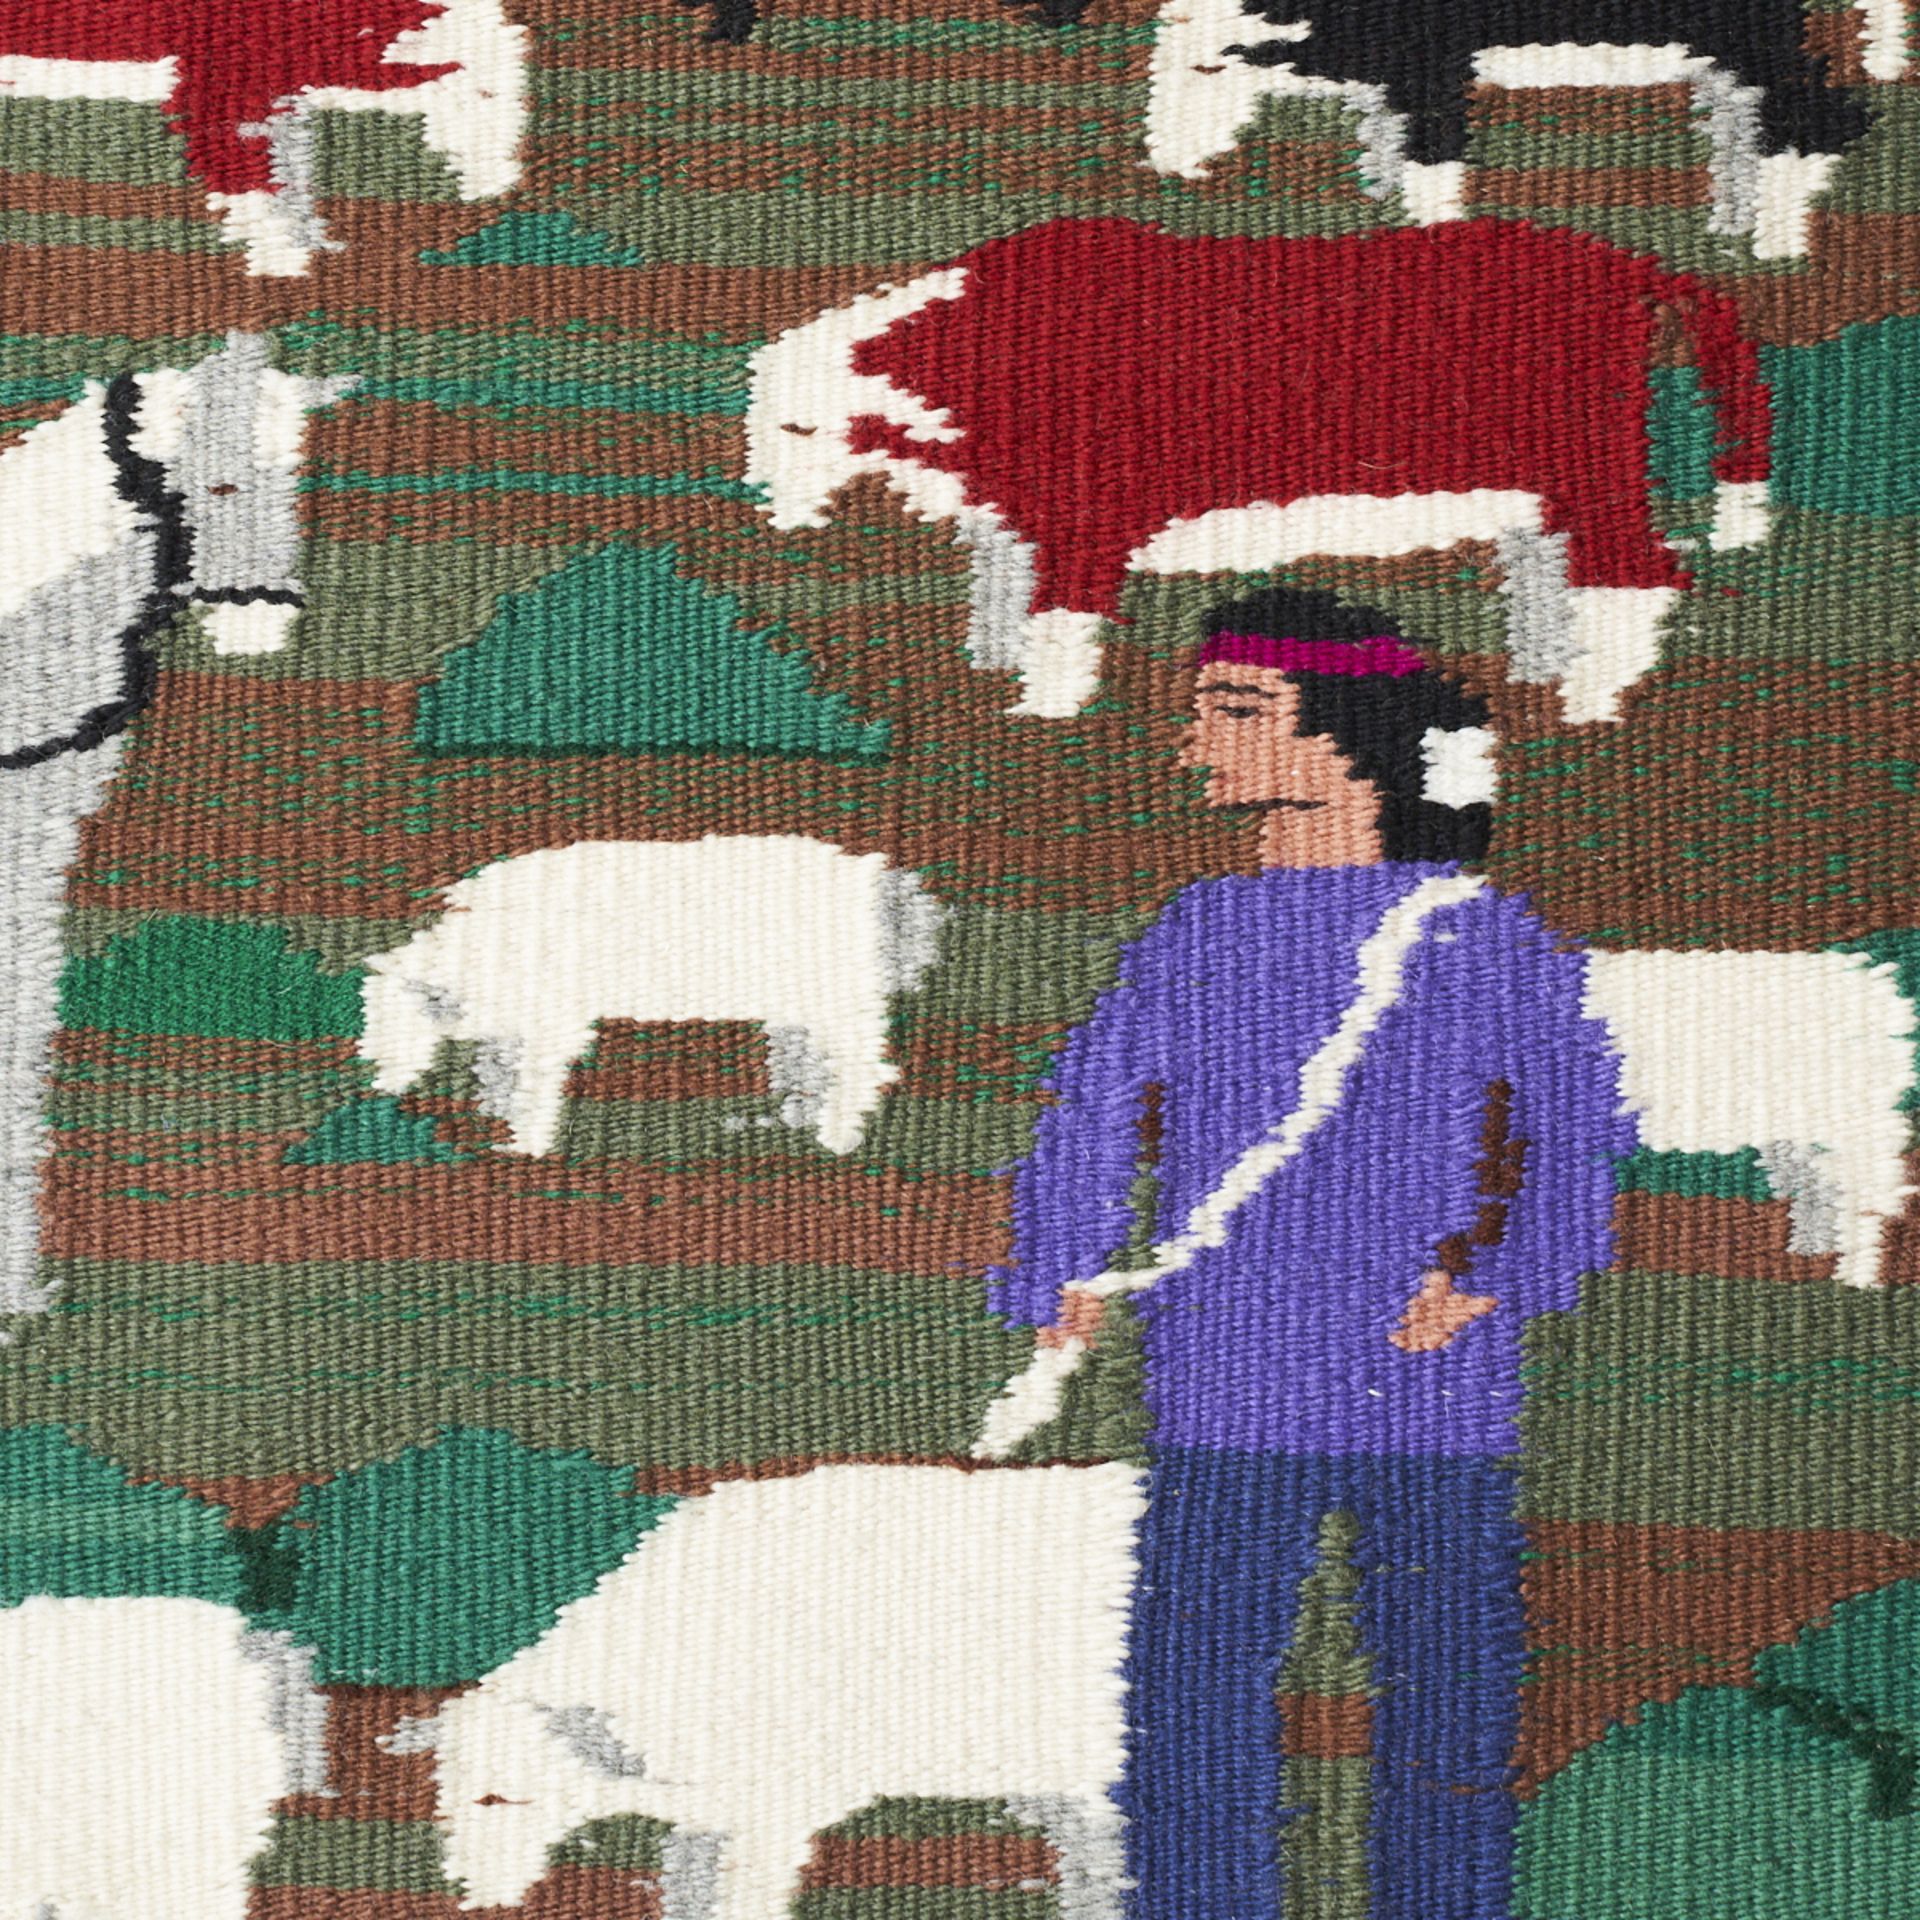 Pictorial Navajo Rug Weaving Blanket Prairie Farm Scene - Image 3 of 4